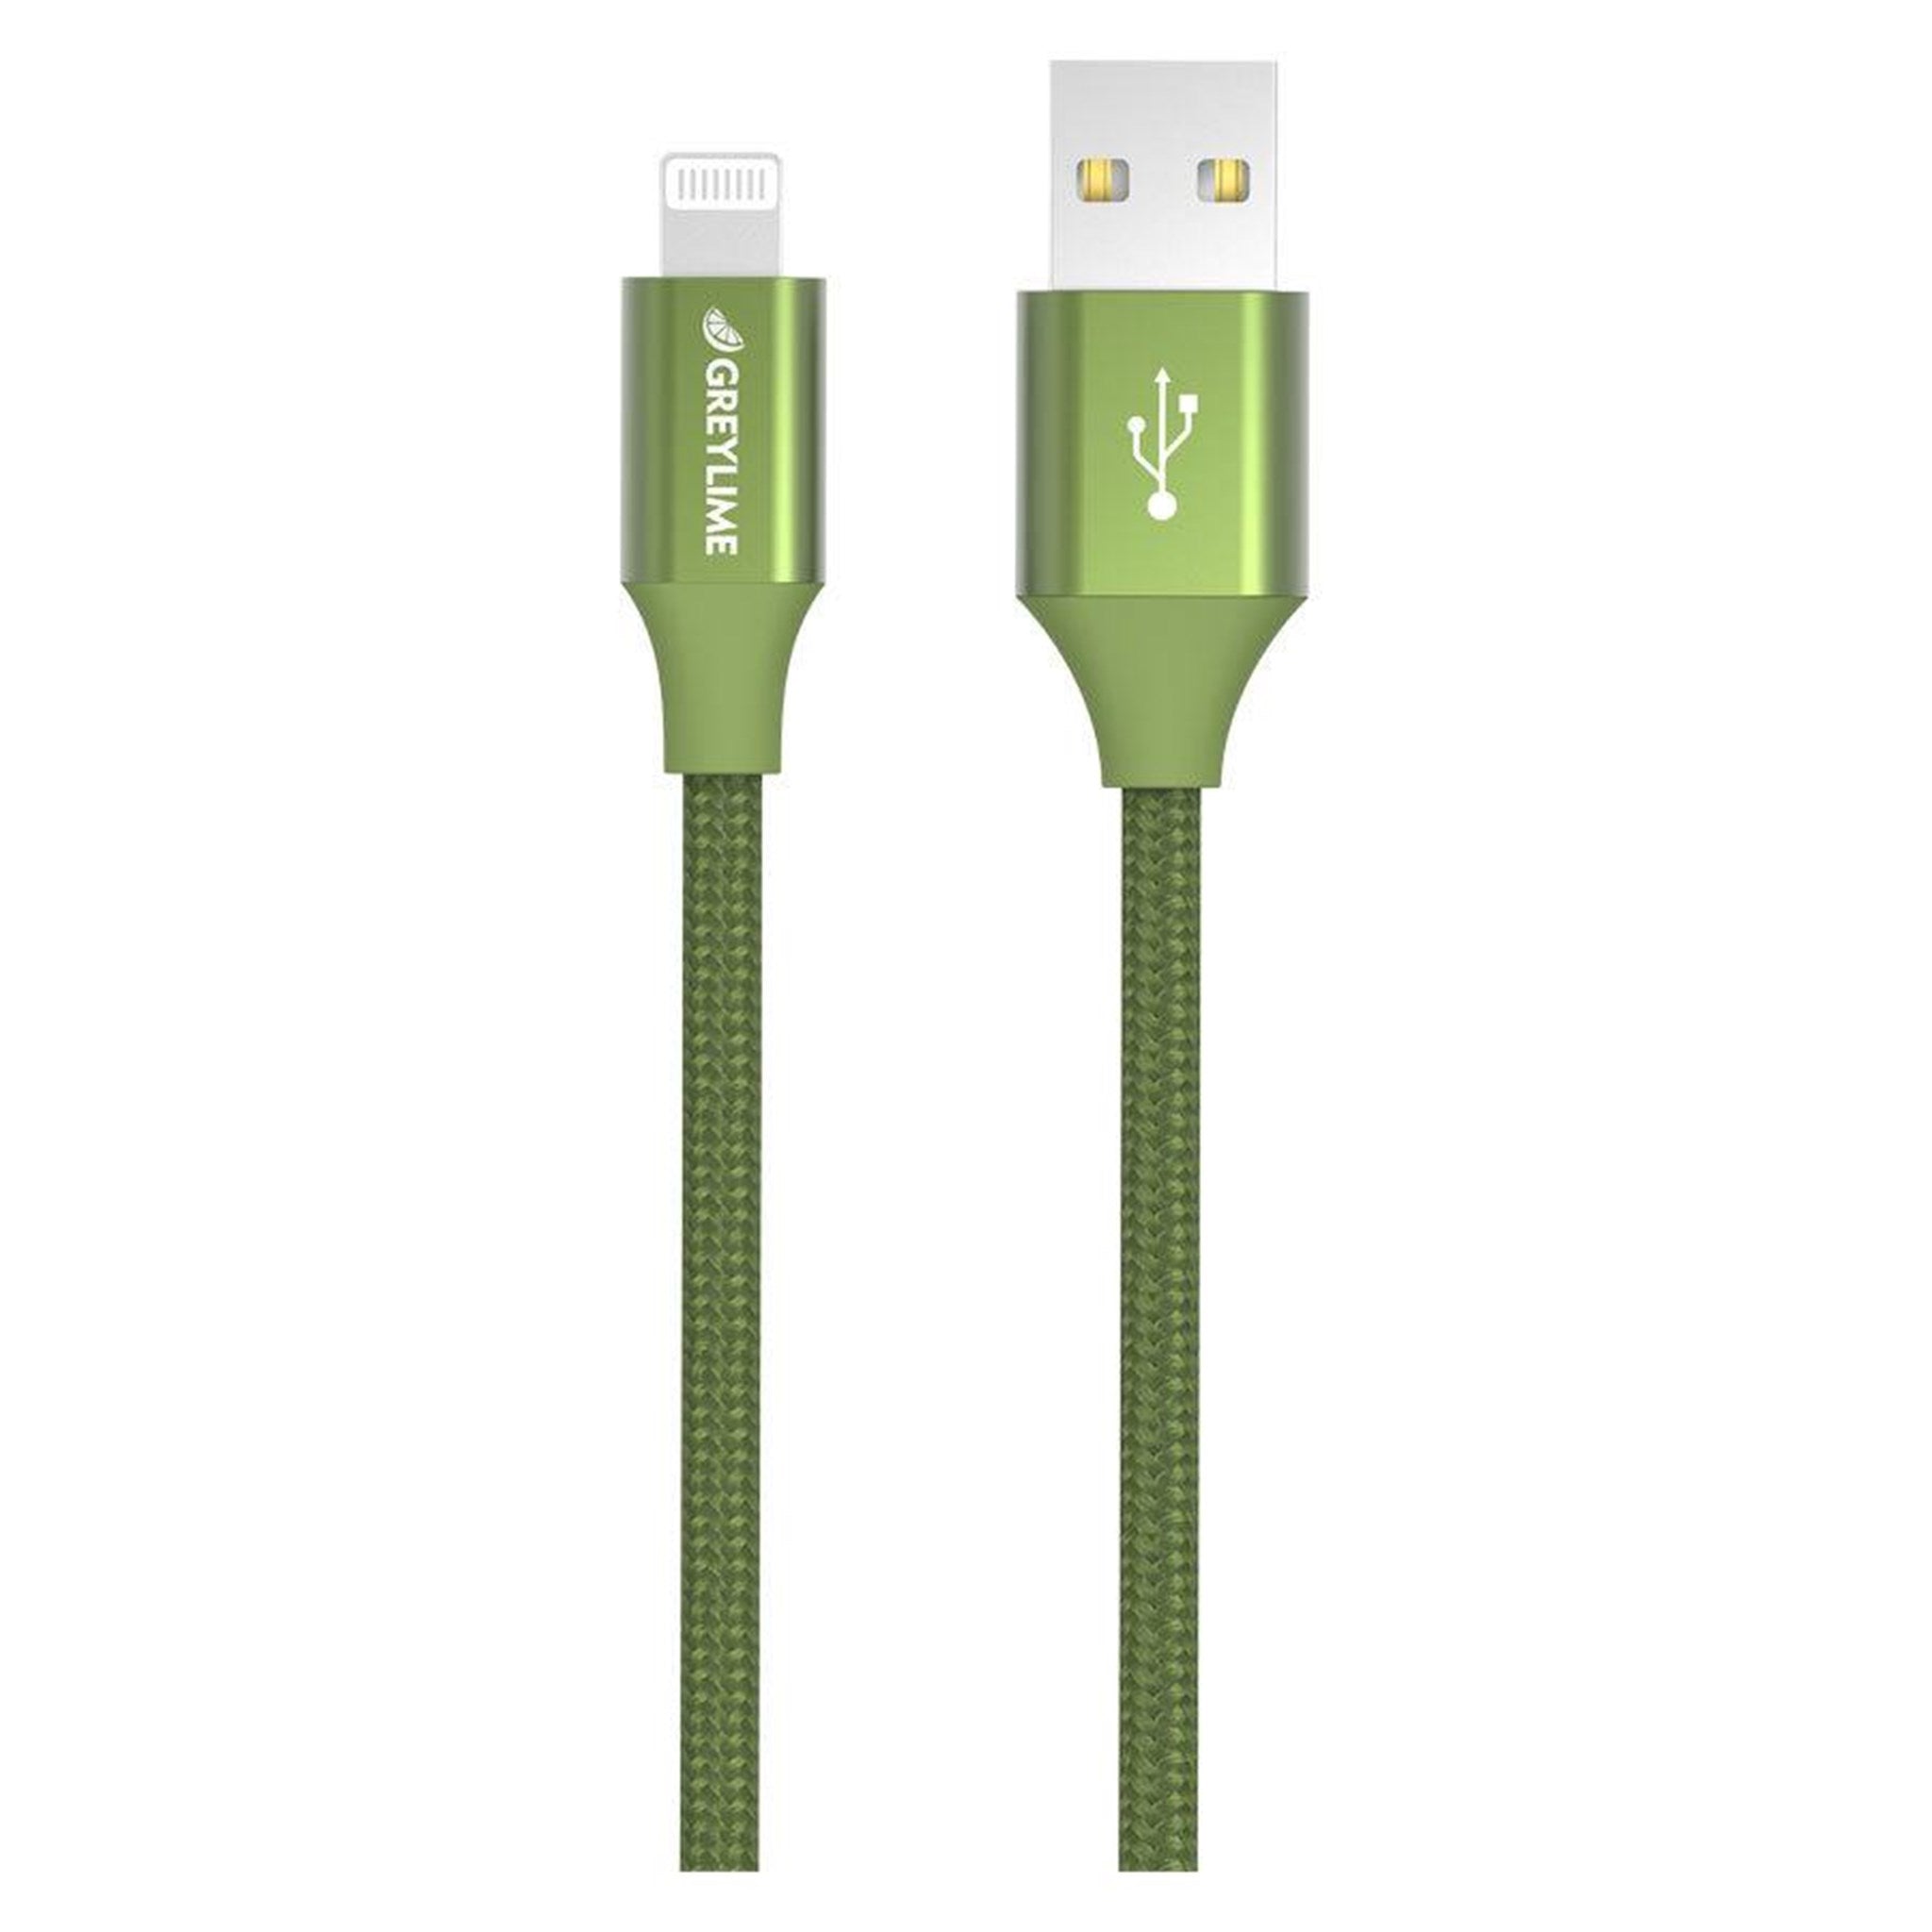 Billede af GreyLime Braided USB-A til MFi Lightning Kabel Grøn 1 m hos GreyLime